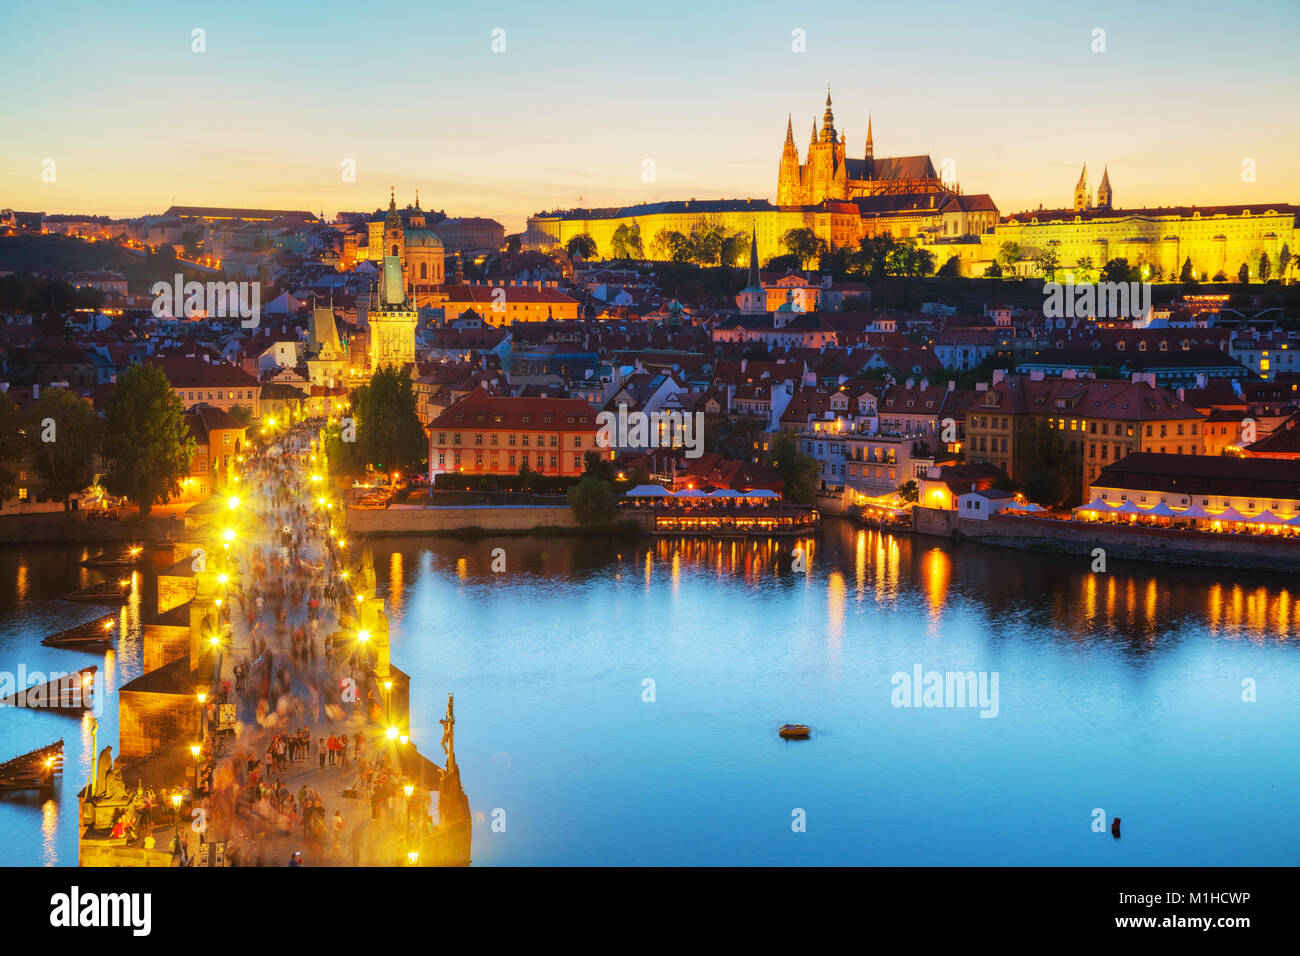 Praga, Repubblica Ceca - 28 agosto: Antenna panoramica di Praga con la Cattedrale di San Vito il 28 agosto 2017 a Praga, Repubblica Ceca. Foto Stock